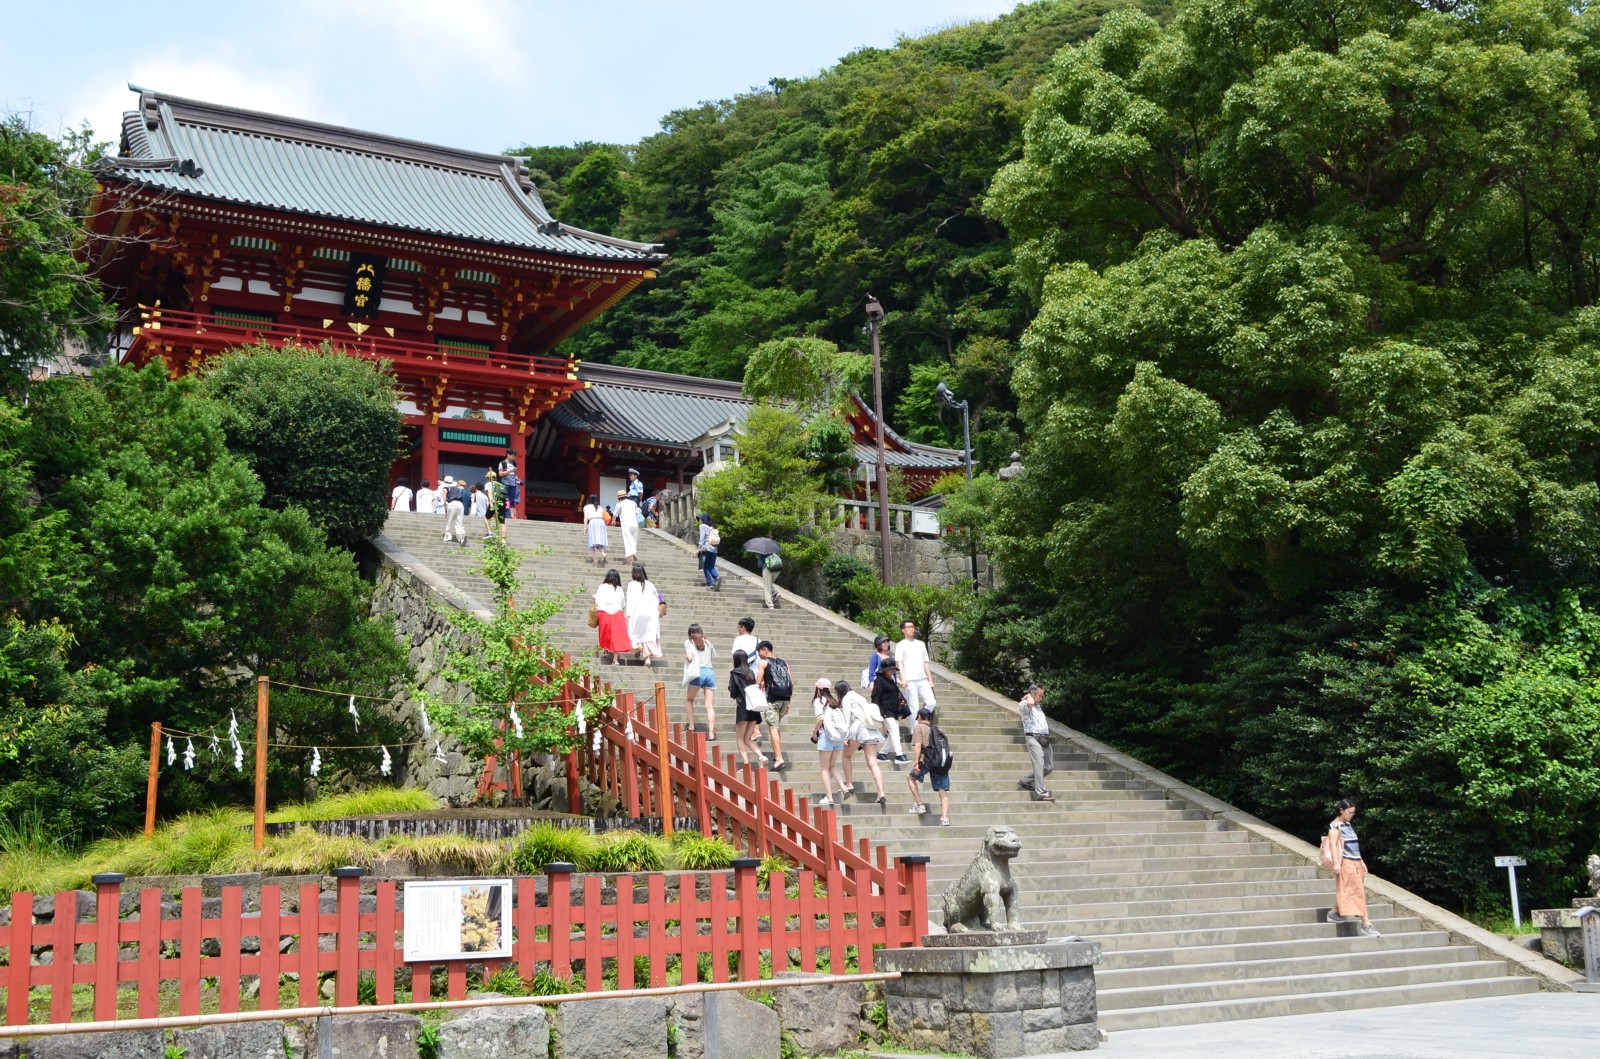 The stairs to the main hall of Tsurugaoka Hachimangu Shrine